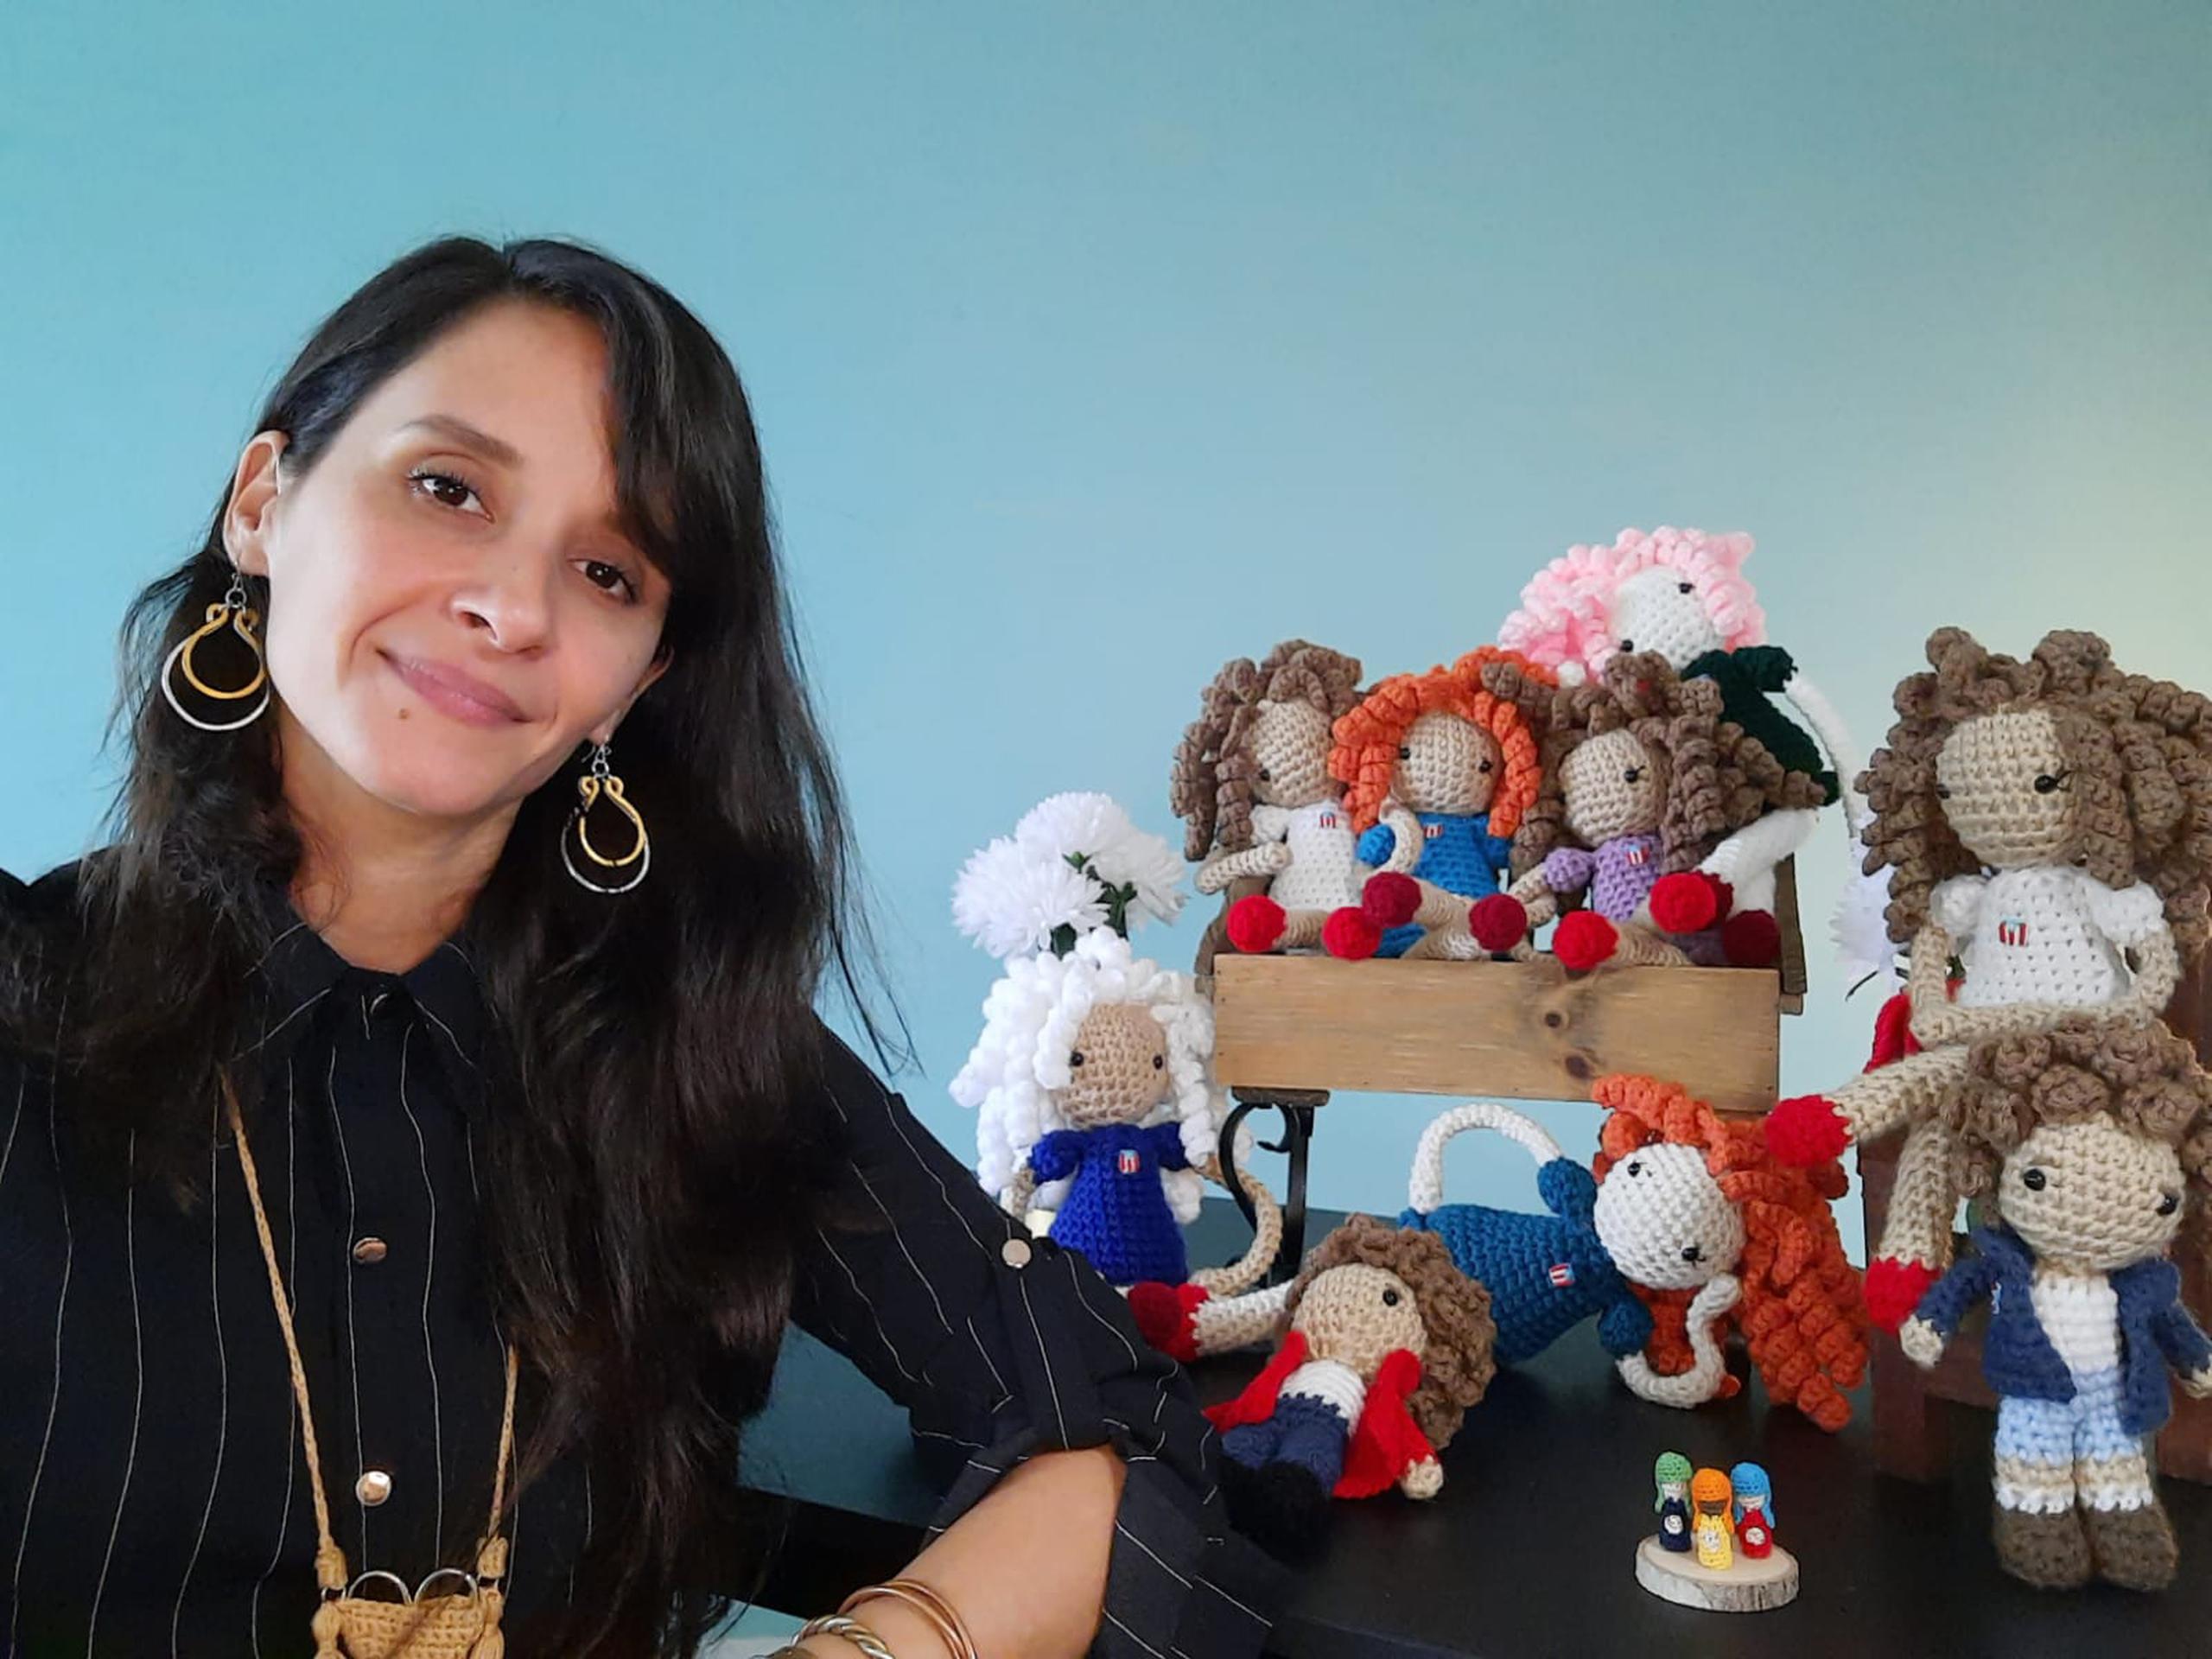 Las muñecas tejidas son las piezas emblemáticas del trabajo artesanal de Chameli Báez García.